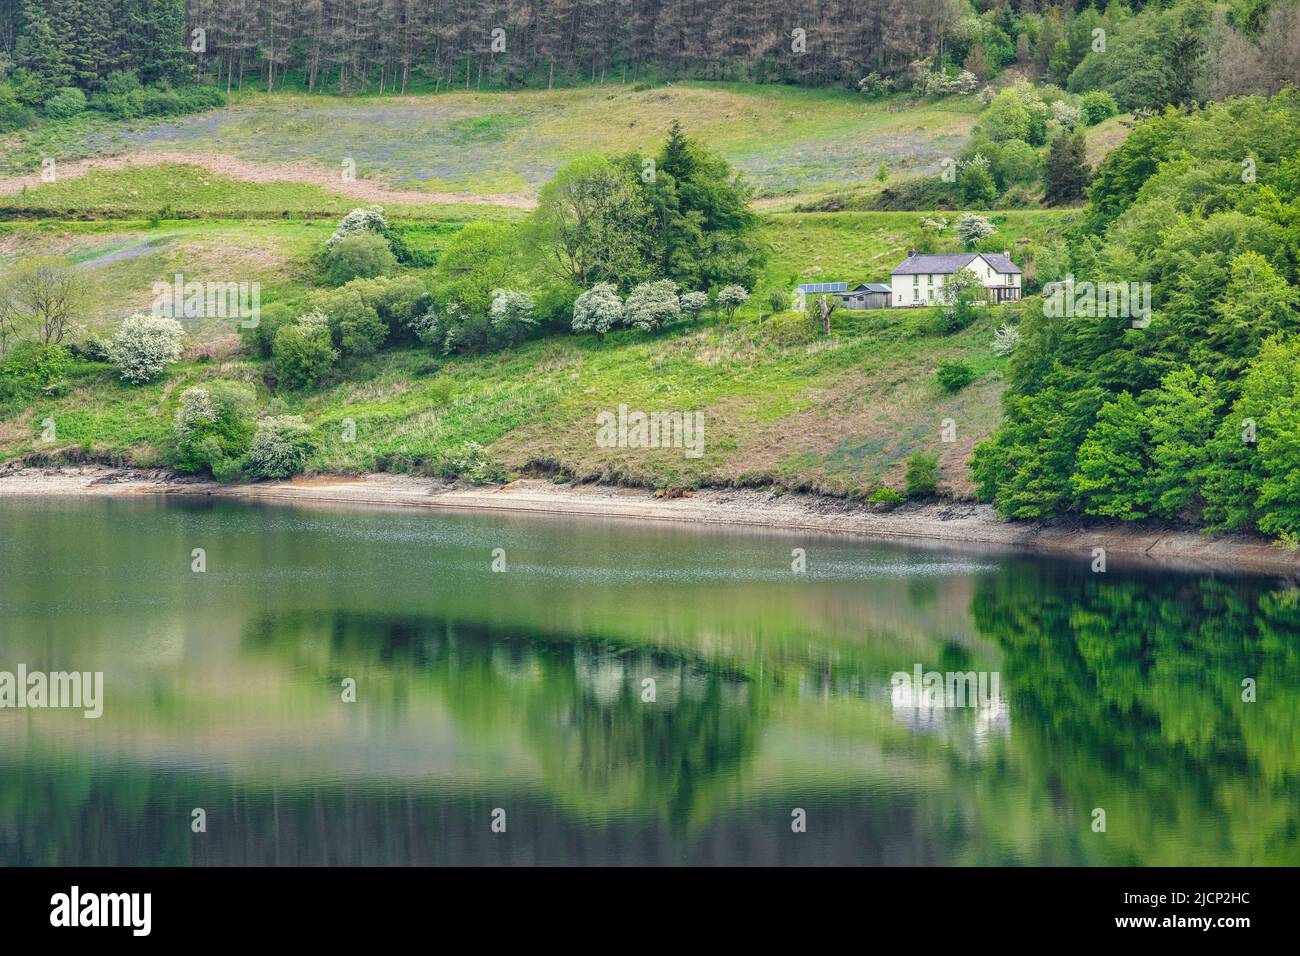 1 juin 2019: Llyn Brianne, pays de Galles, Royaume-Uni - Maison isolée à côté du réservoir, reflétée dans l'eau. Banque D'Images